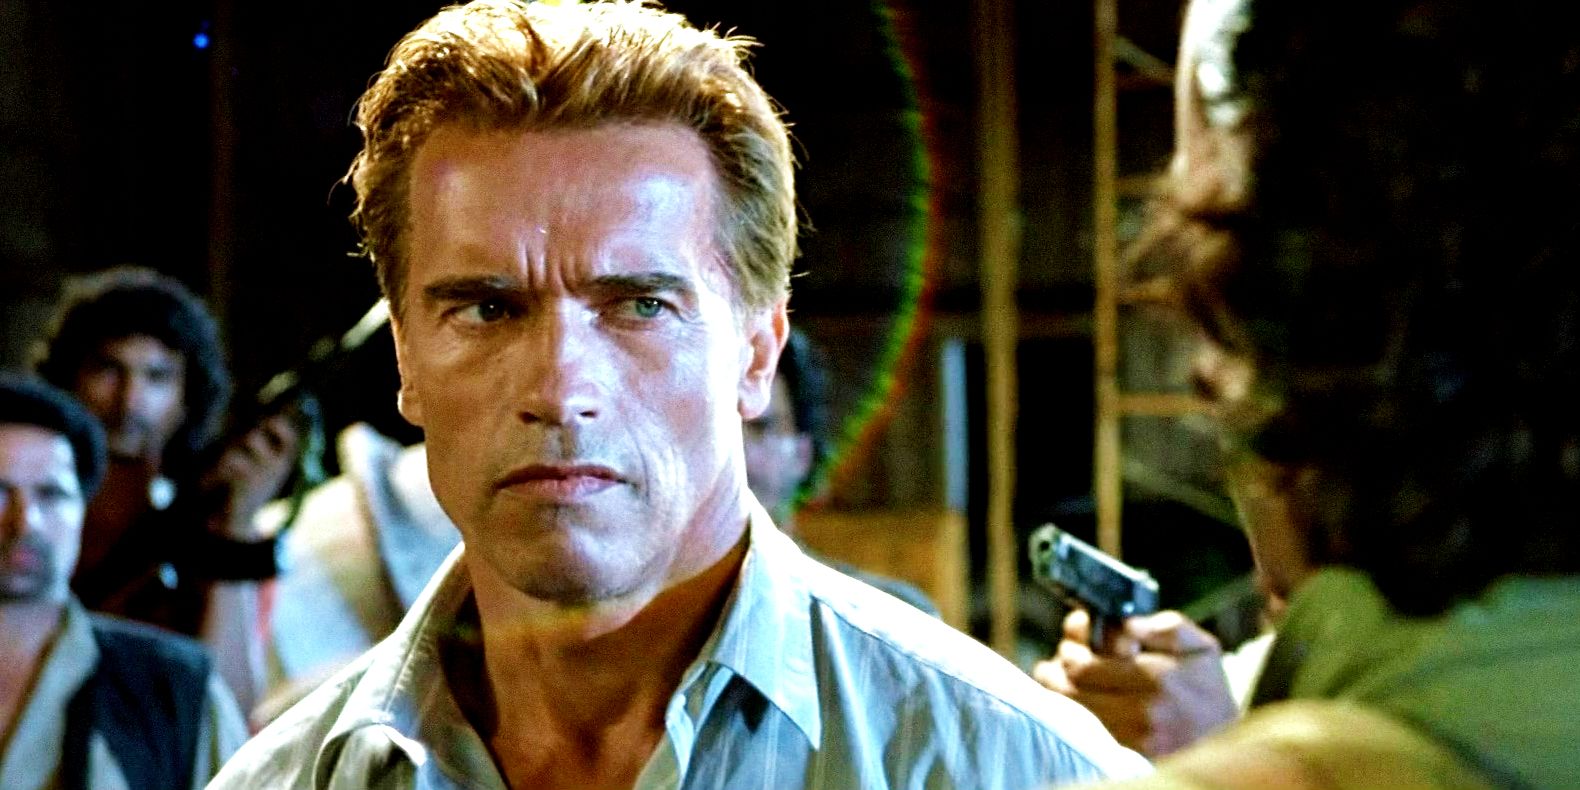 Secuencia de James Bond de mentiras verdaderas desechadas de Arnold Schwarzenegger detallada por James Cameron